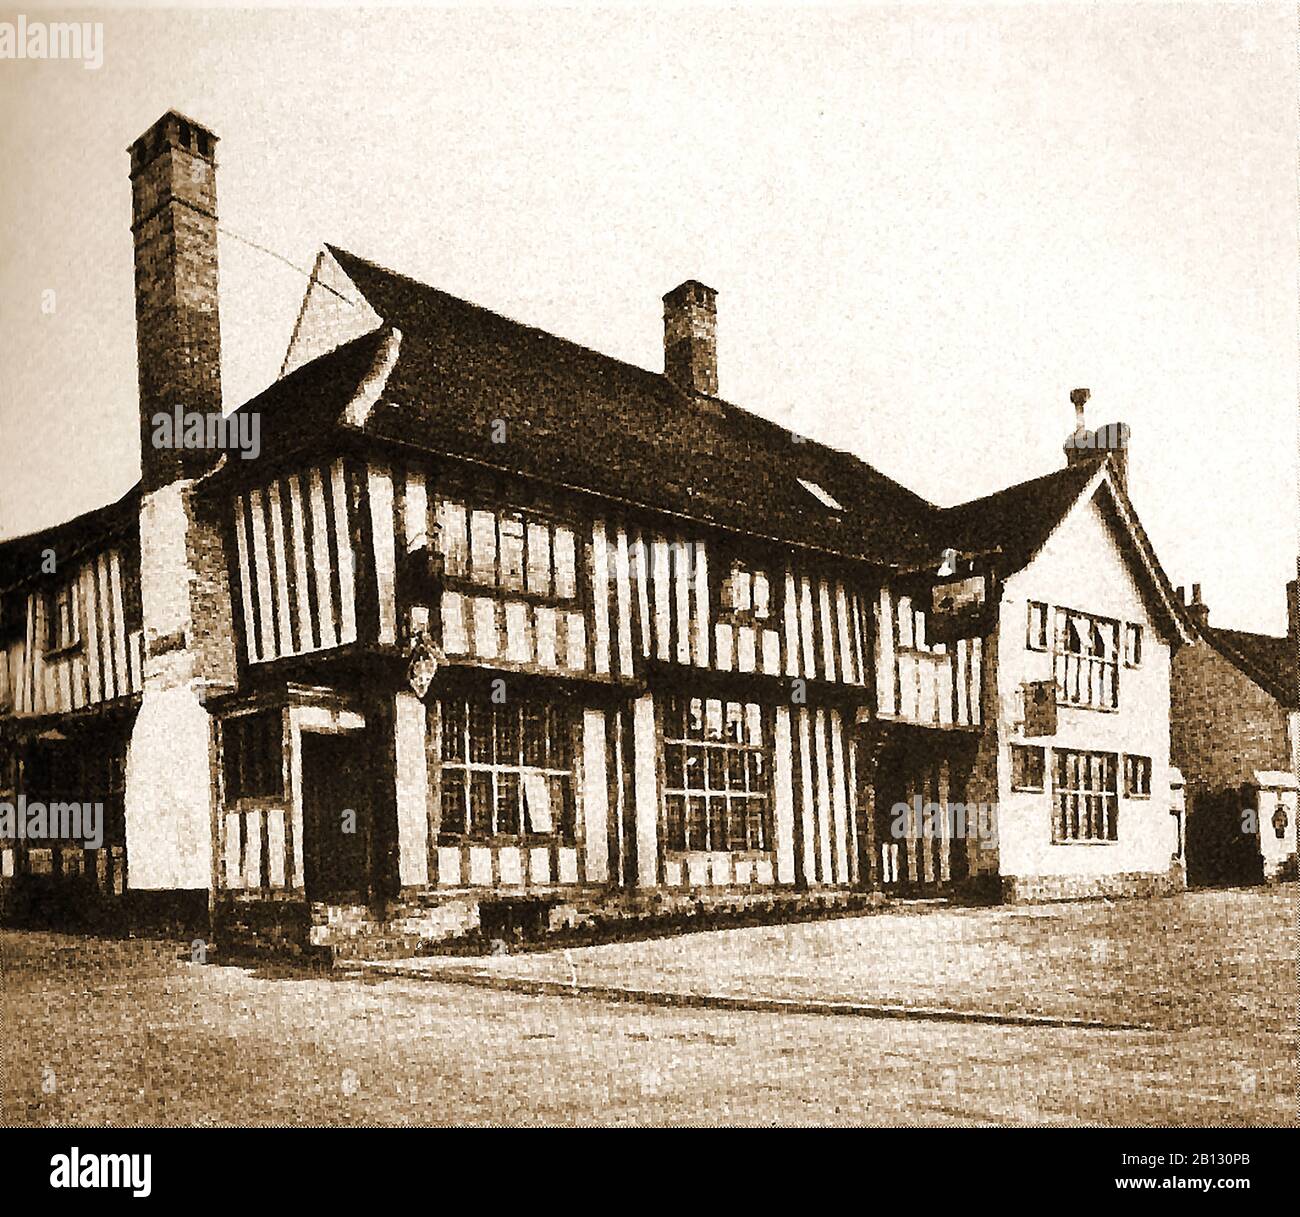 C vierziger Jahre - Eine alte Fotografie des historischen Bull Inn in Long Melford, einem Dorf in Suffolk in England (Ursprünglich ein Merchant's House aus dem Jahr 1450 und später ein Coaching inn). Das Gespenst von Richard Evered, der im Jahr 1648 im Hotel erstochen wurde, soll die Hotelhallen, Zimmer (insbesondere Zimmer 4) und Korridore noch überfluten. Ein Balken in der Lounge ist mit dem Bild eines 'Wildman' oder 'Woodwose' geschnitzt, einem ähnlichen Fabelwesen wie der grüne Mann, aber mit vollem Körper. Stockfoto